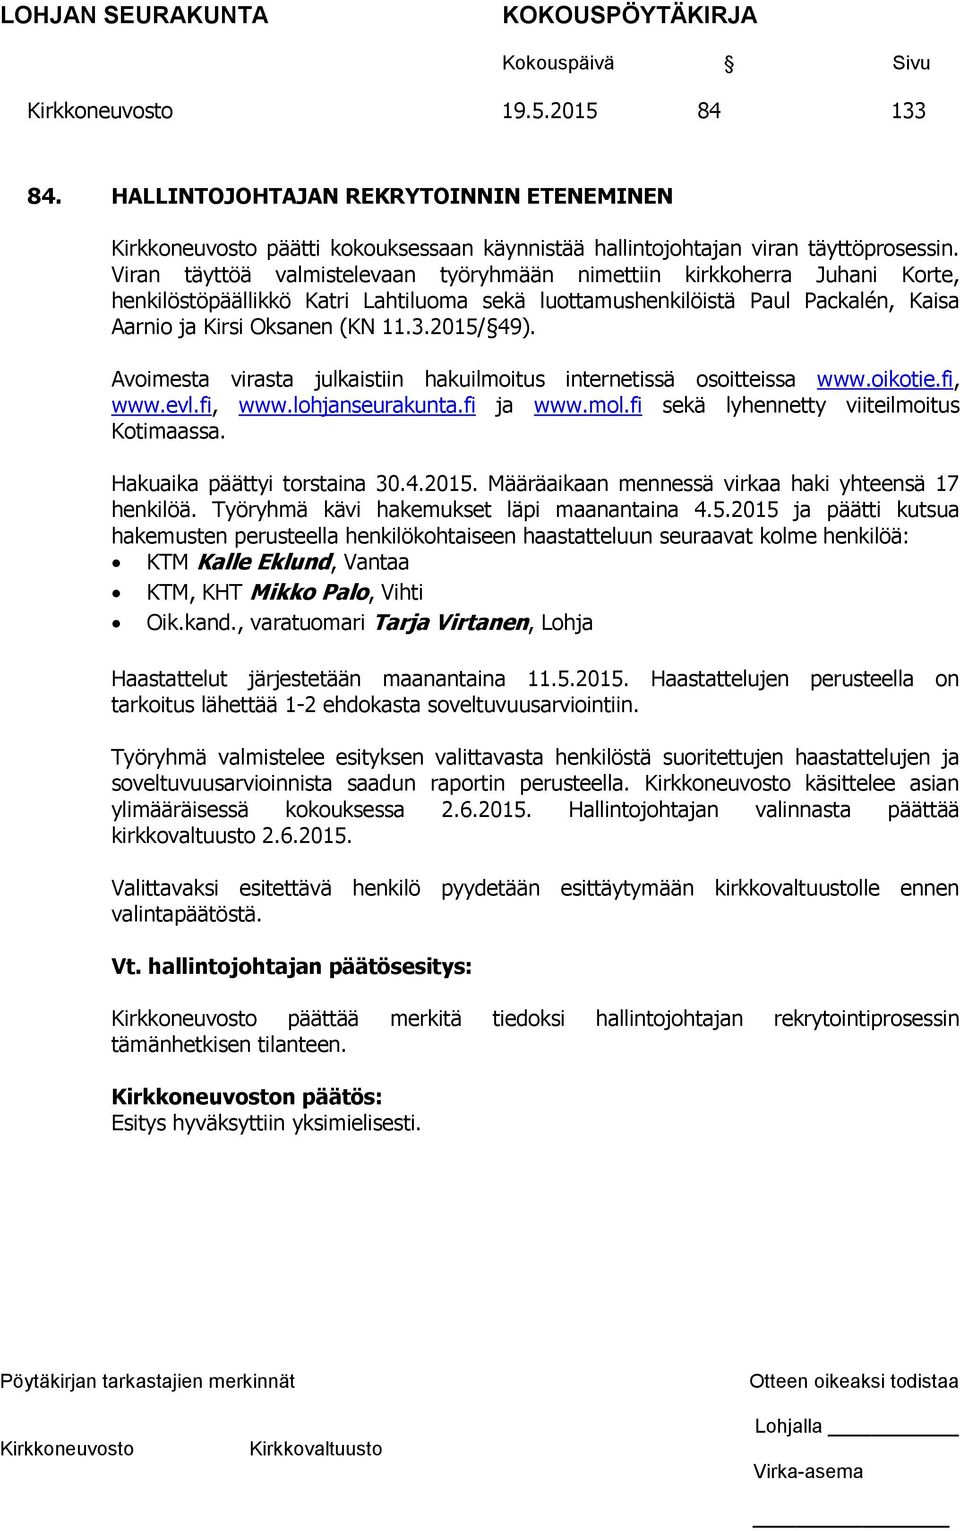 2015/ 49). Avoimesta virasta julkaistiin hakuilmoitus internetissä osoitteissa www.oikotie.fi, www.evl.fi, www.lohjanseurakunta.fi ja www.mol.fi sekä lyhennetty viiteilmoitus Kotimaassa.